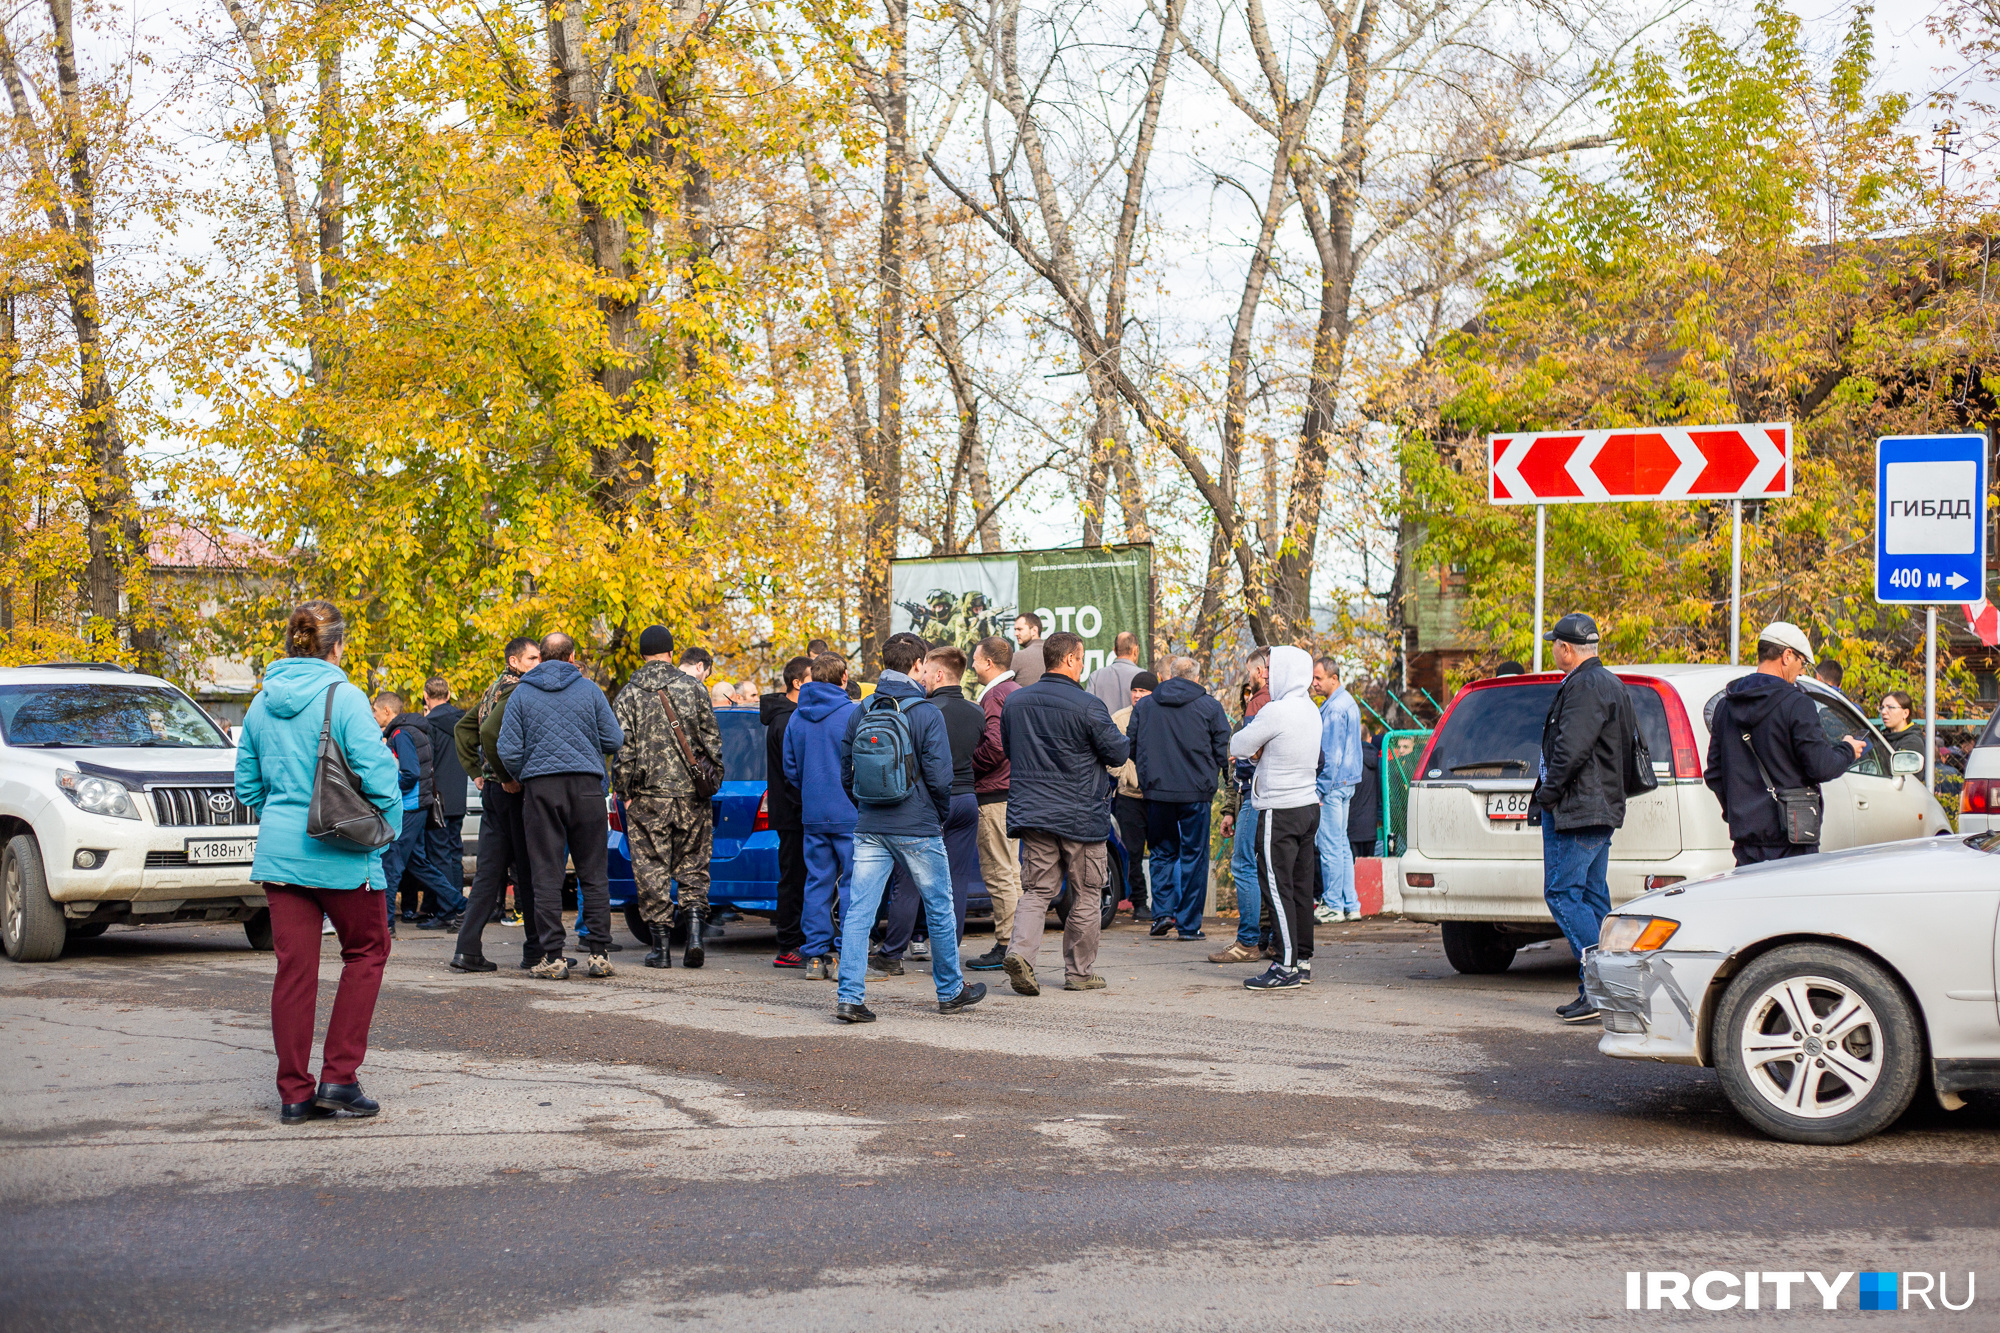 Водители, которые оказывались утром 24 сентября в районе военкомата в Дзержинске, вынуждены были передвигаться крайне аккуратно